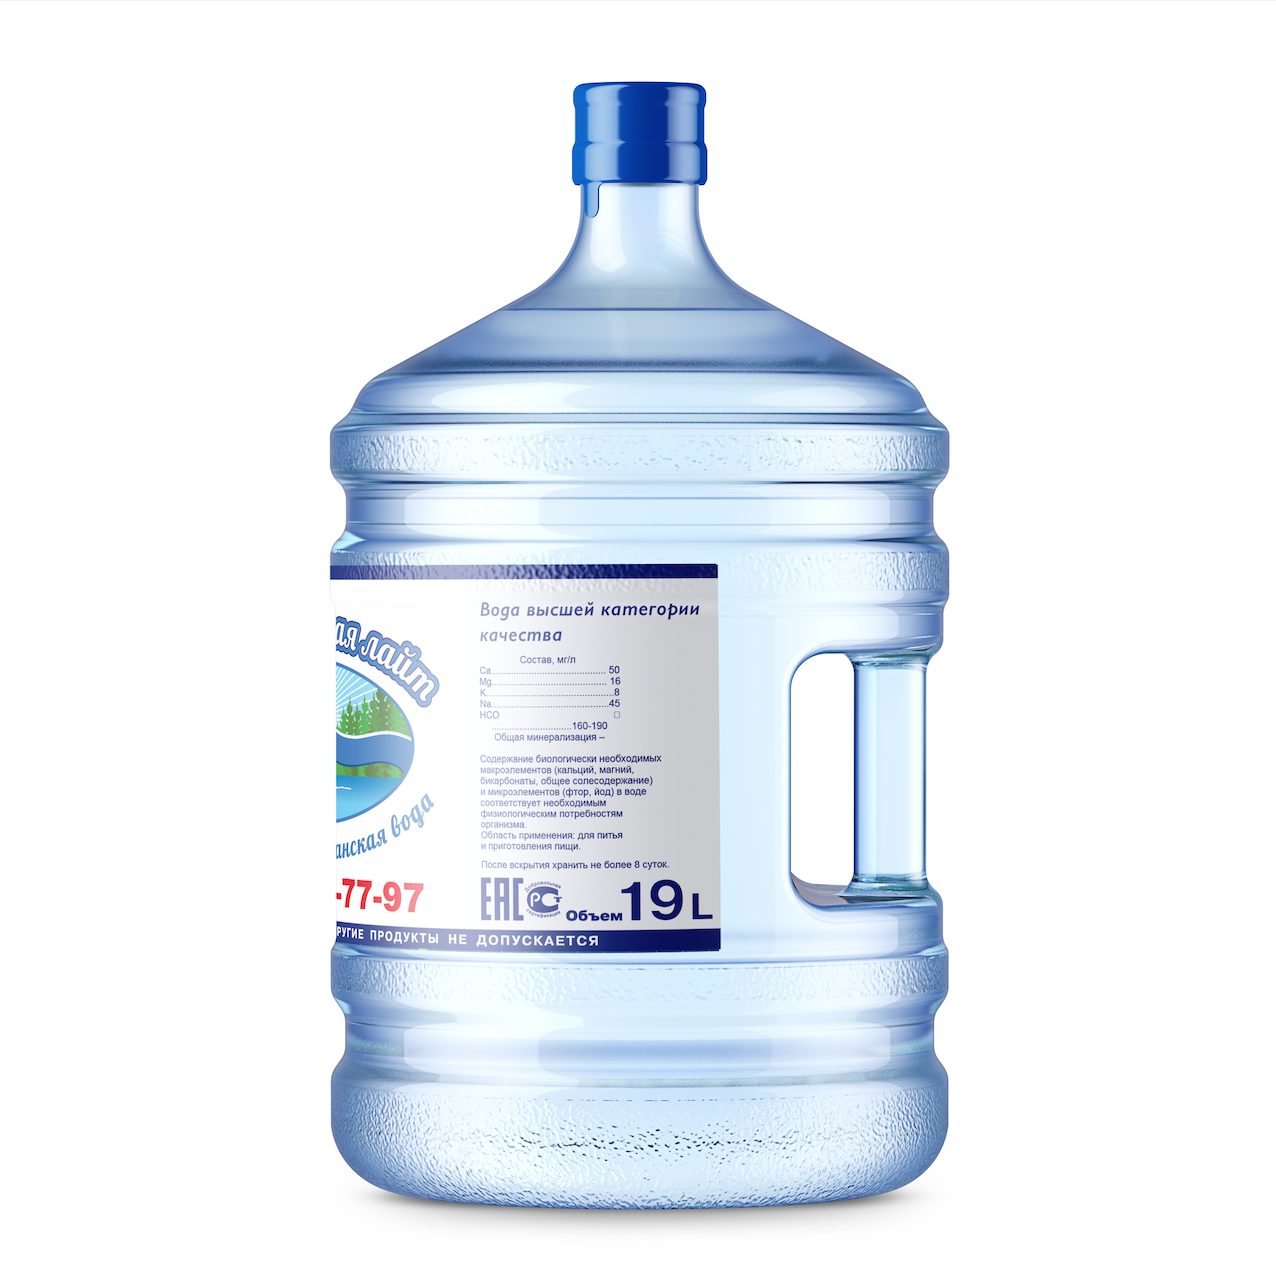 Вода пилигрим 19 литров. Вода питьевая 19л Подольск. Вода 19 литров. Вода питьевая Лазурная 19л. Вода "Пилигрим" 19л.